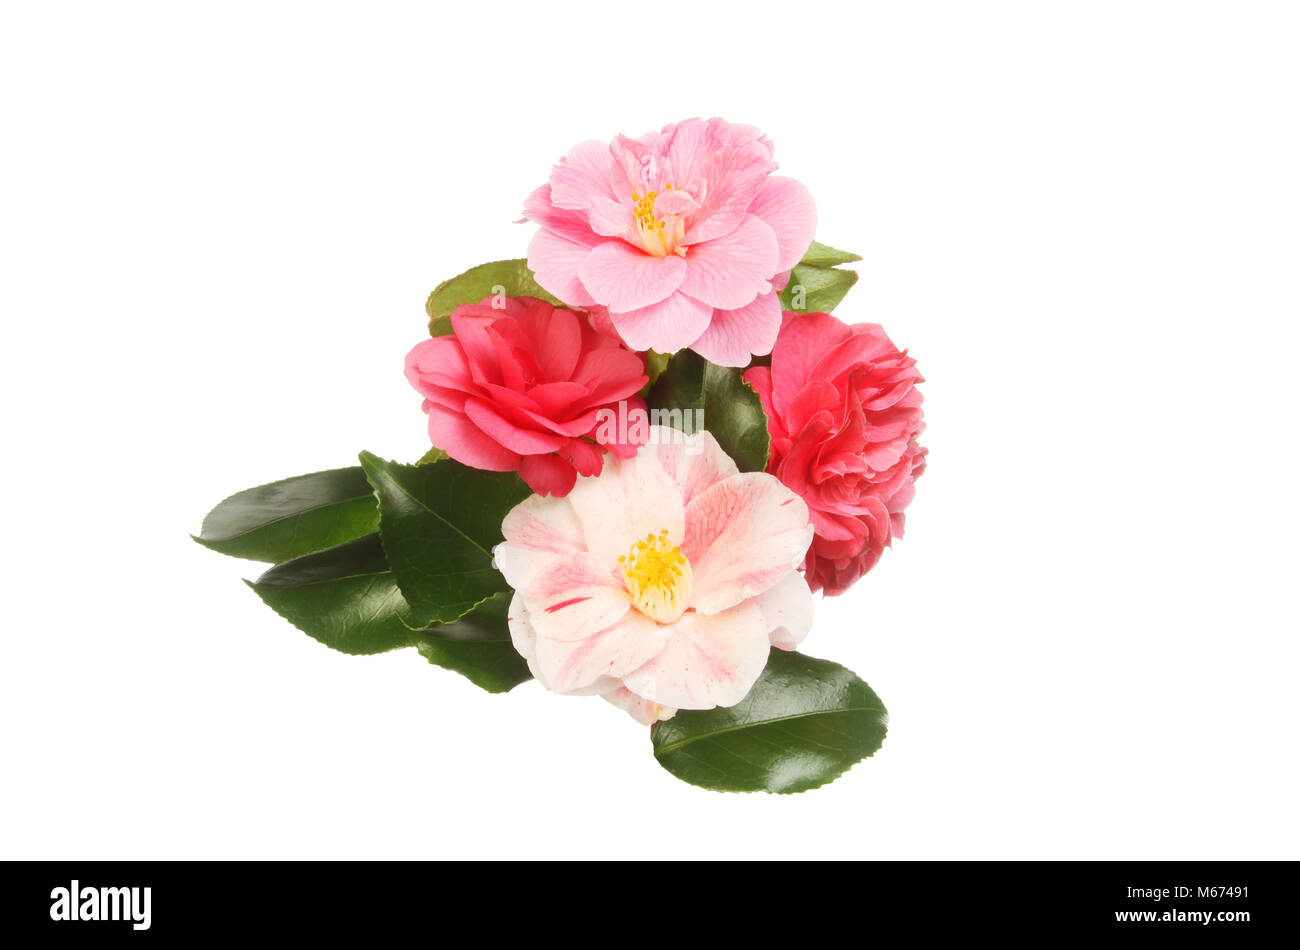 Arrangement des fleurs et feuillages camellia plaques stratifiees usage isolés contre white Banque D'Images